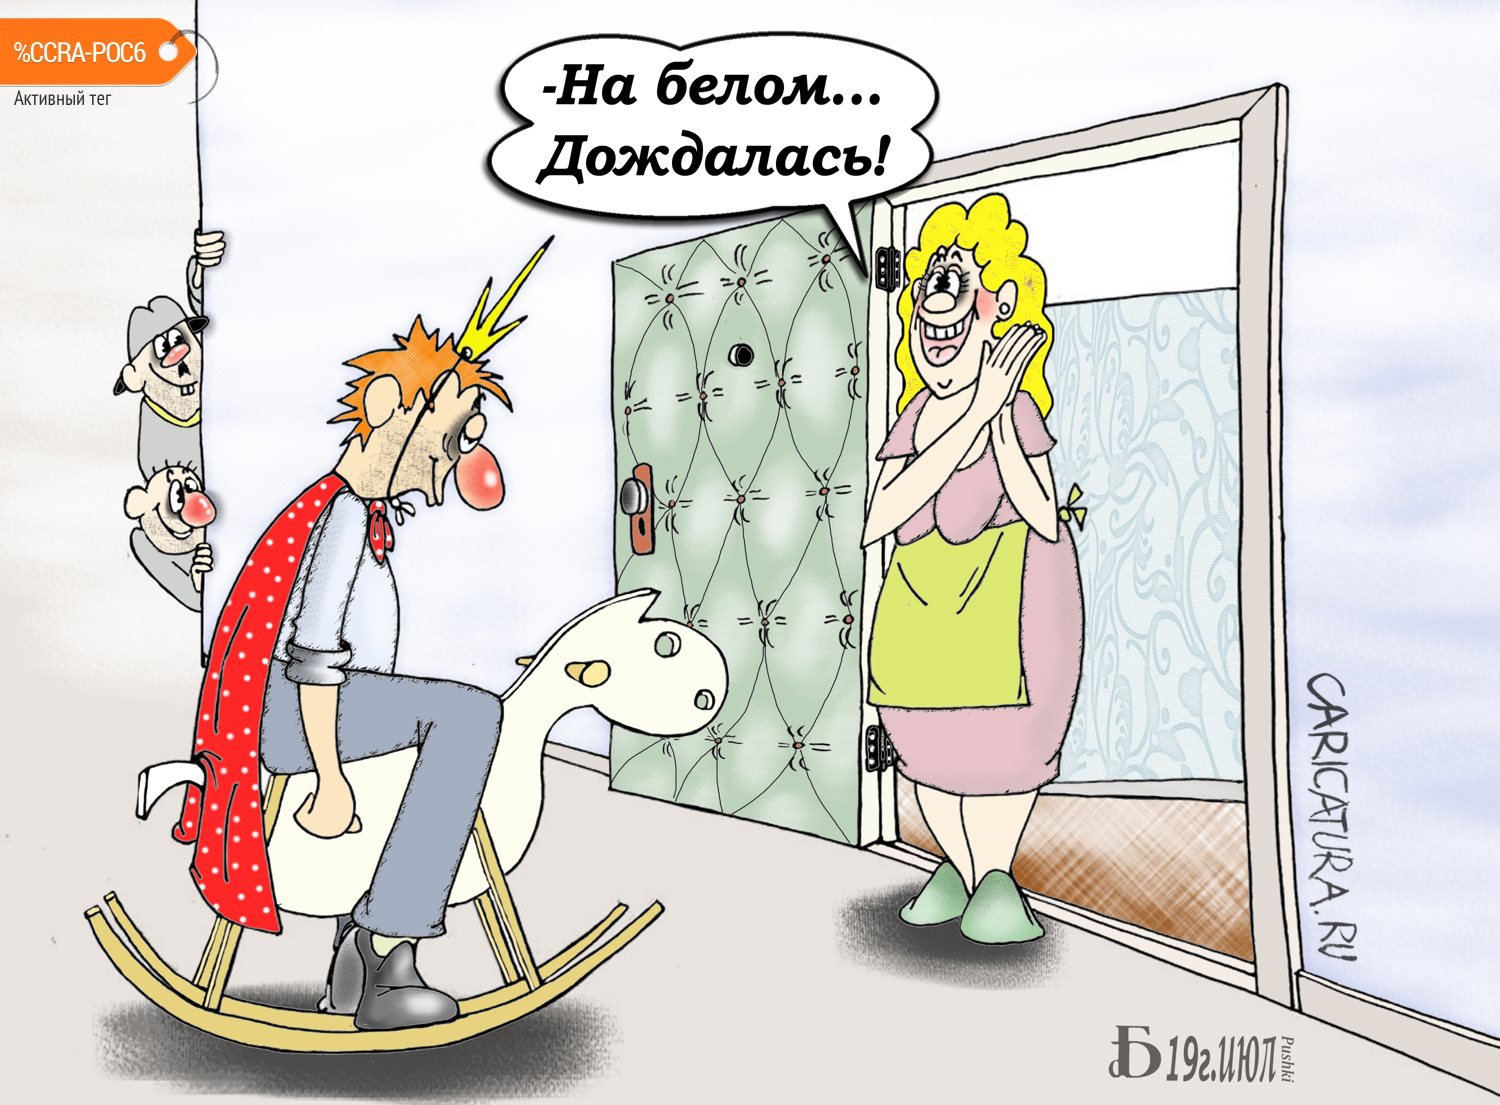 Карикатура "Про ожидания", Борис Демин